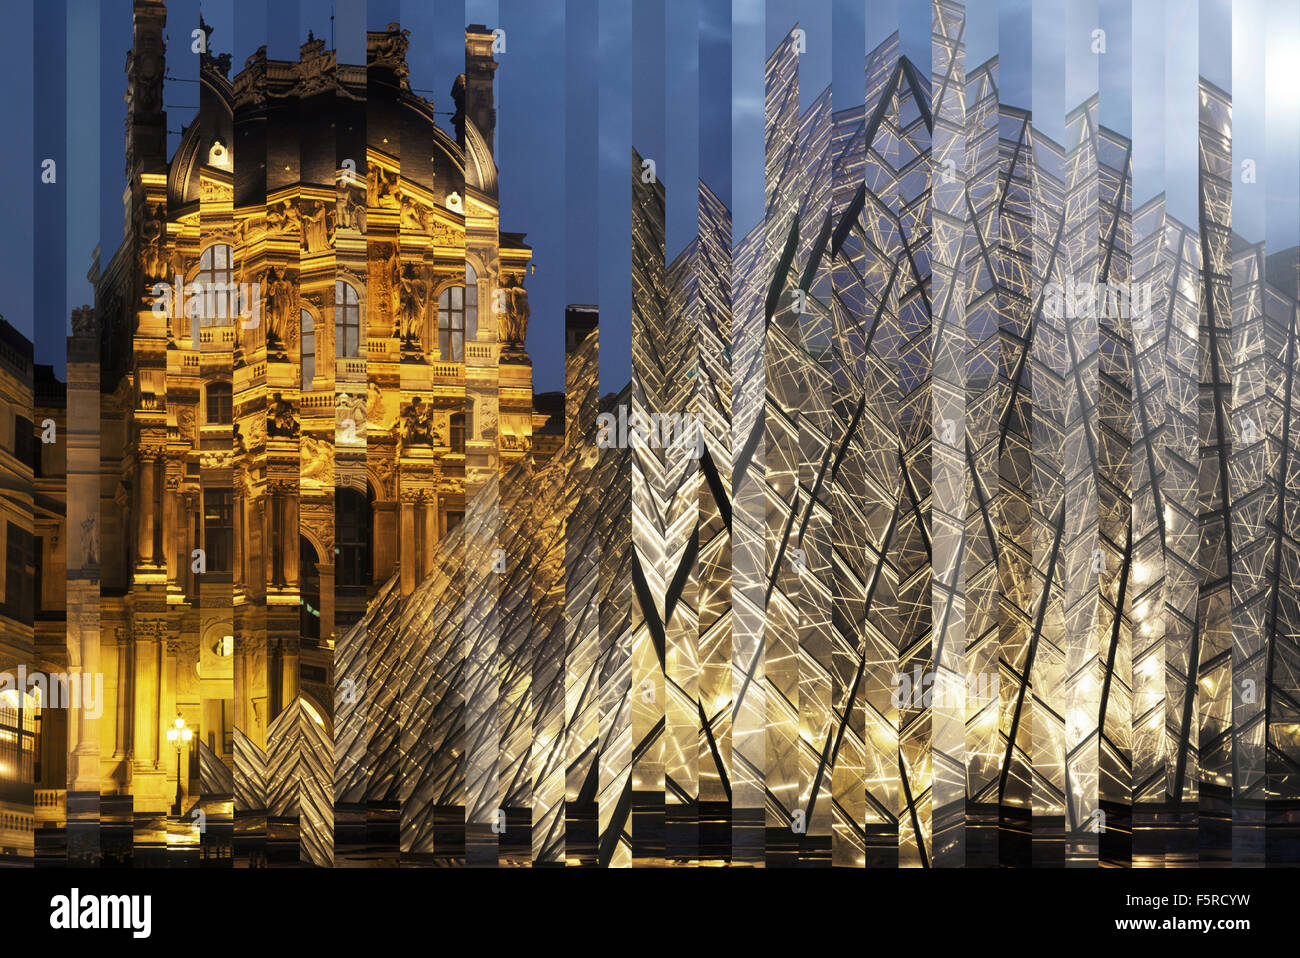 France, Paris, Louvre et pyramide vue à travers le verre déformé Banque D'Images